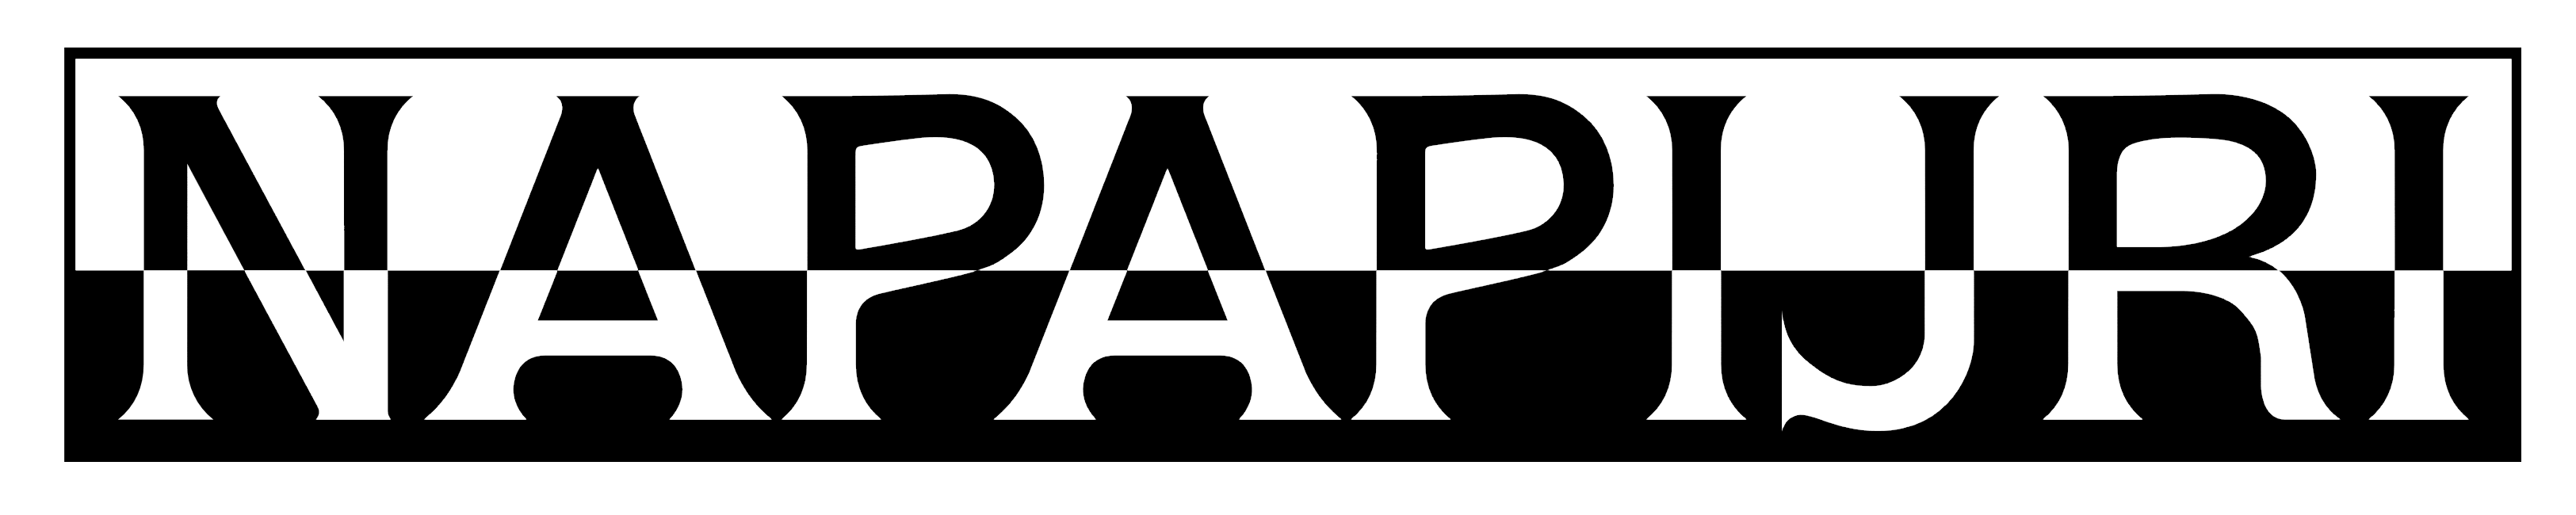 Napapijri_logo